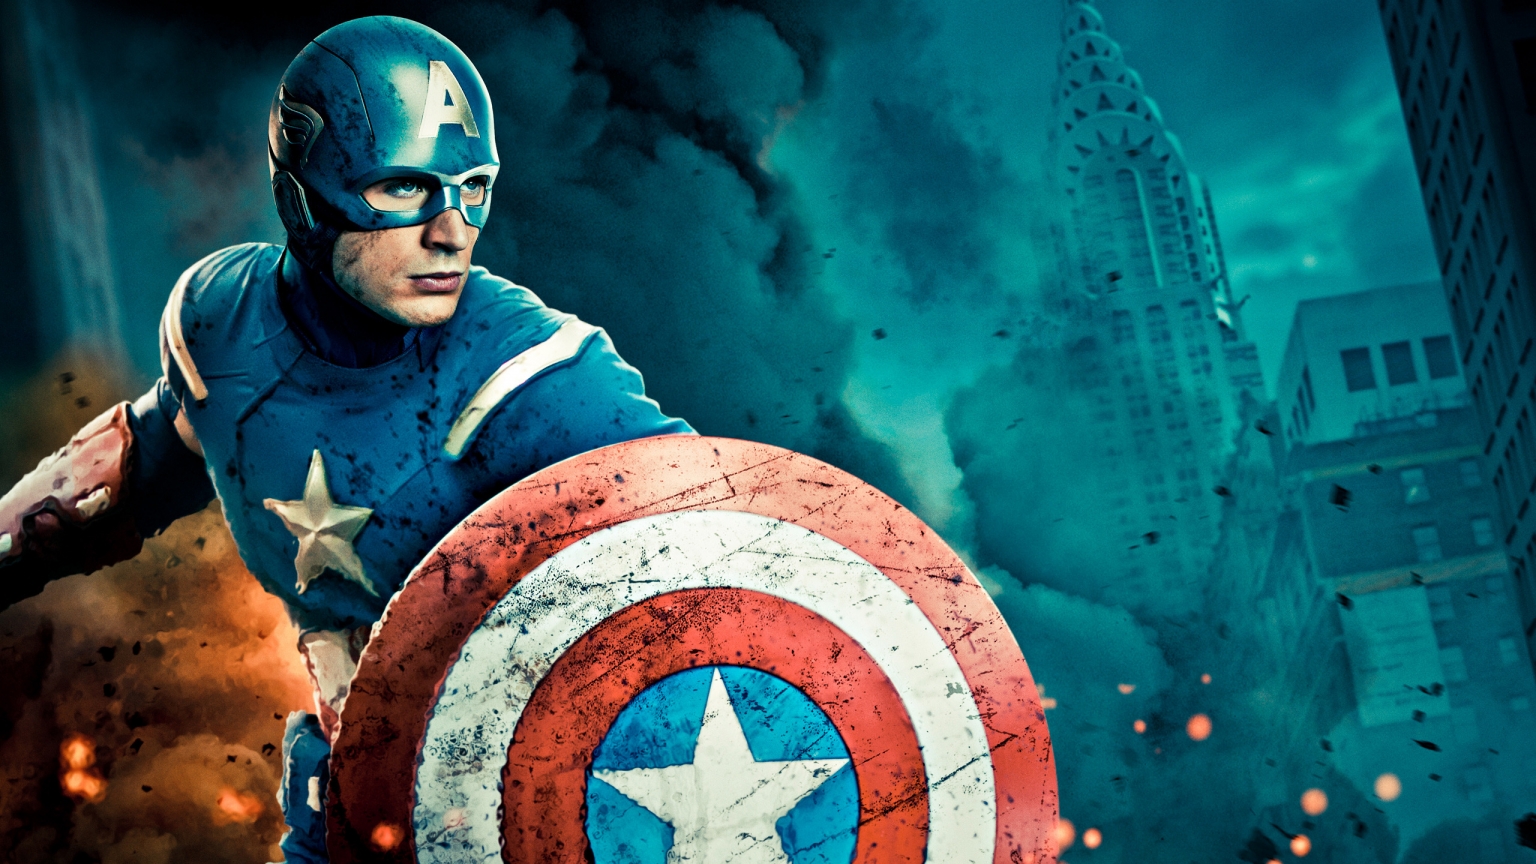 Captain America The Avengers for 1536 x 864 HDTV resolution